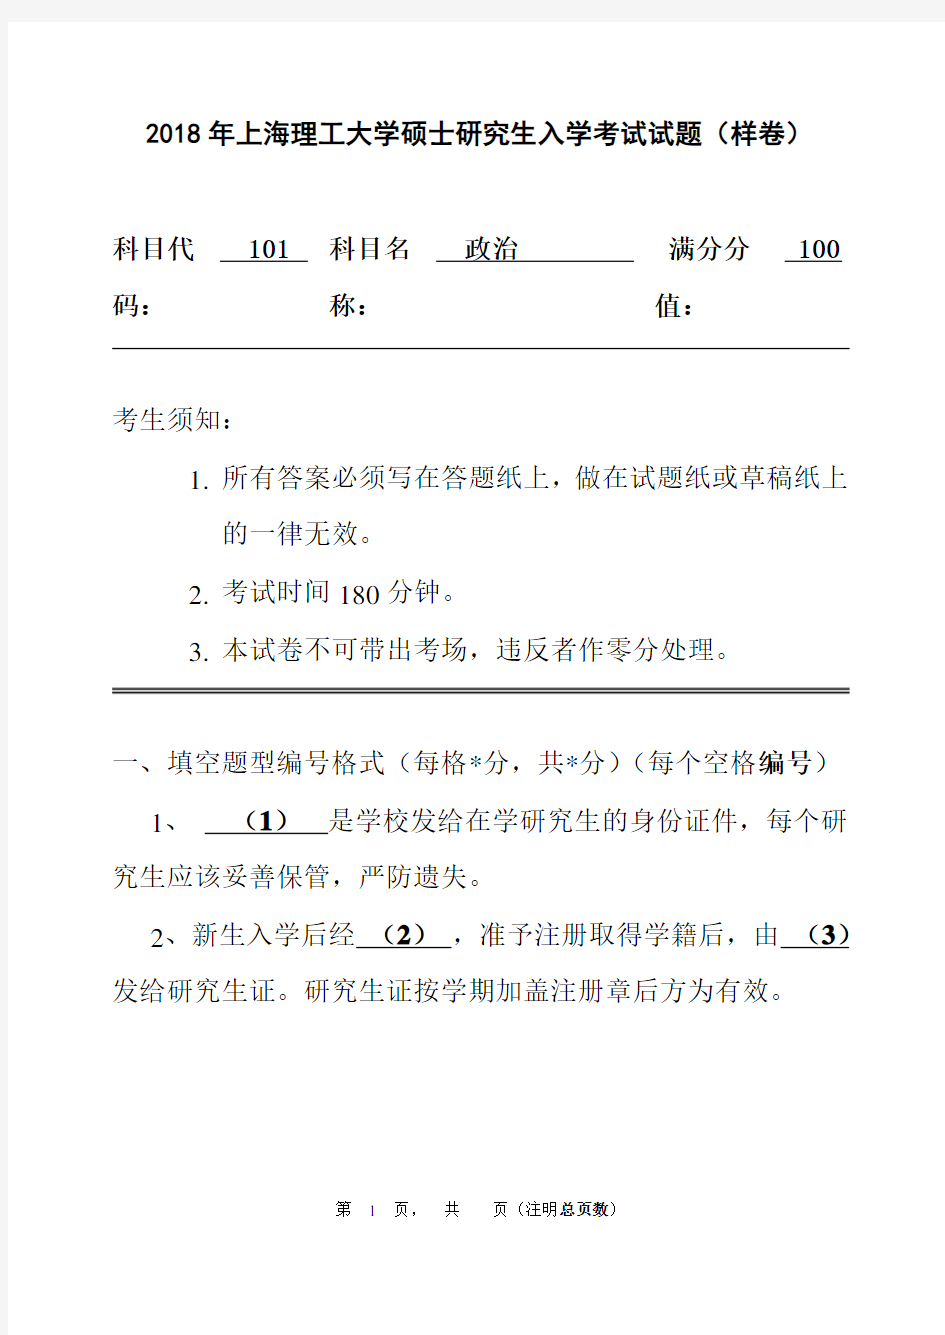 上海理工大学2018年硕士研究生入学考试试题(样卷)